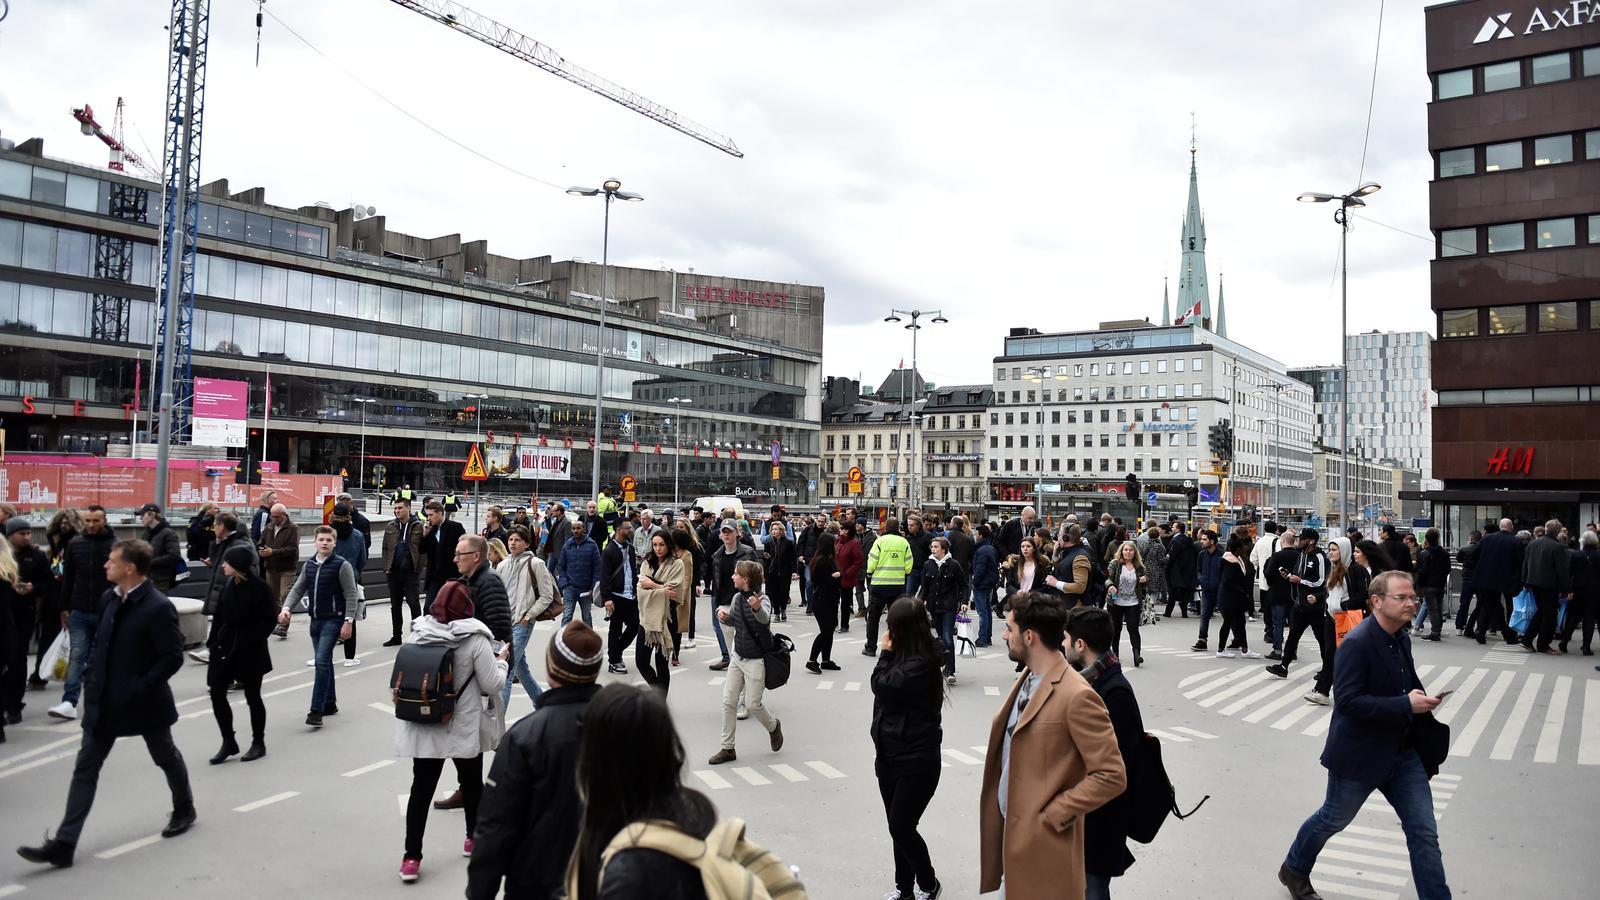 El centre d'Estocolm estava ple de gent en el moment de l'atac / TT NEWS AGENCY / REUTERS